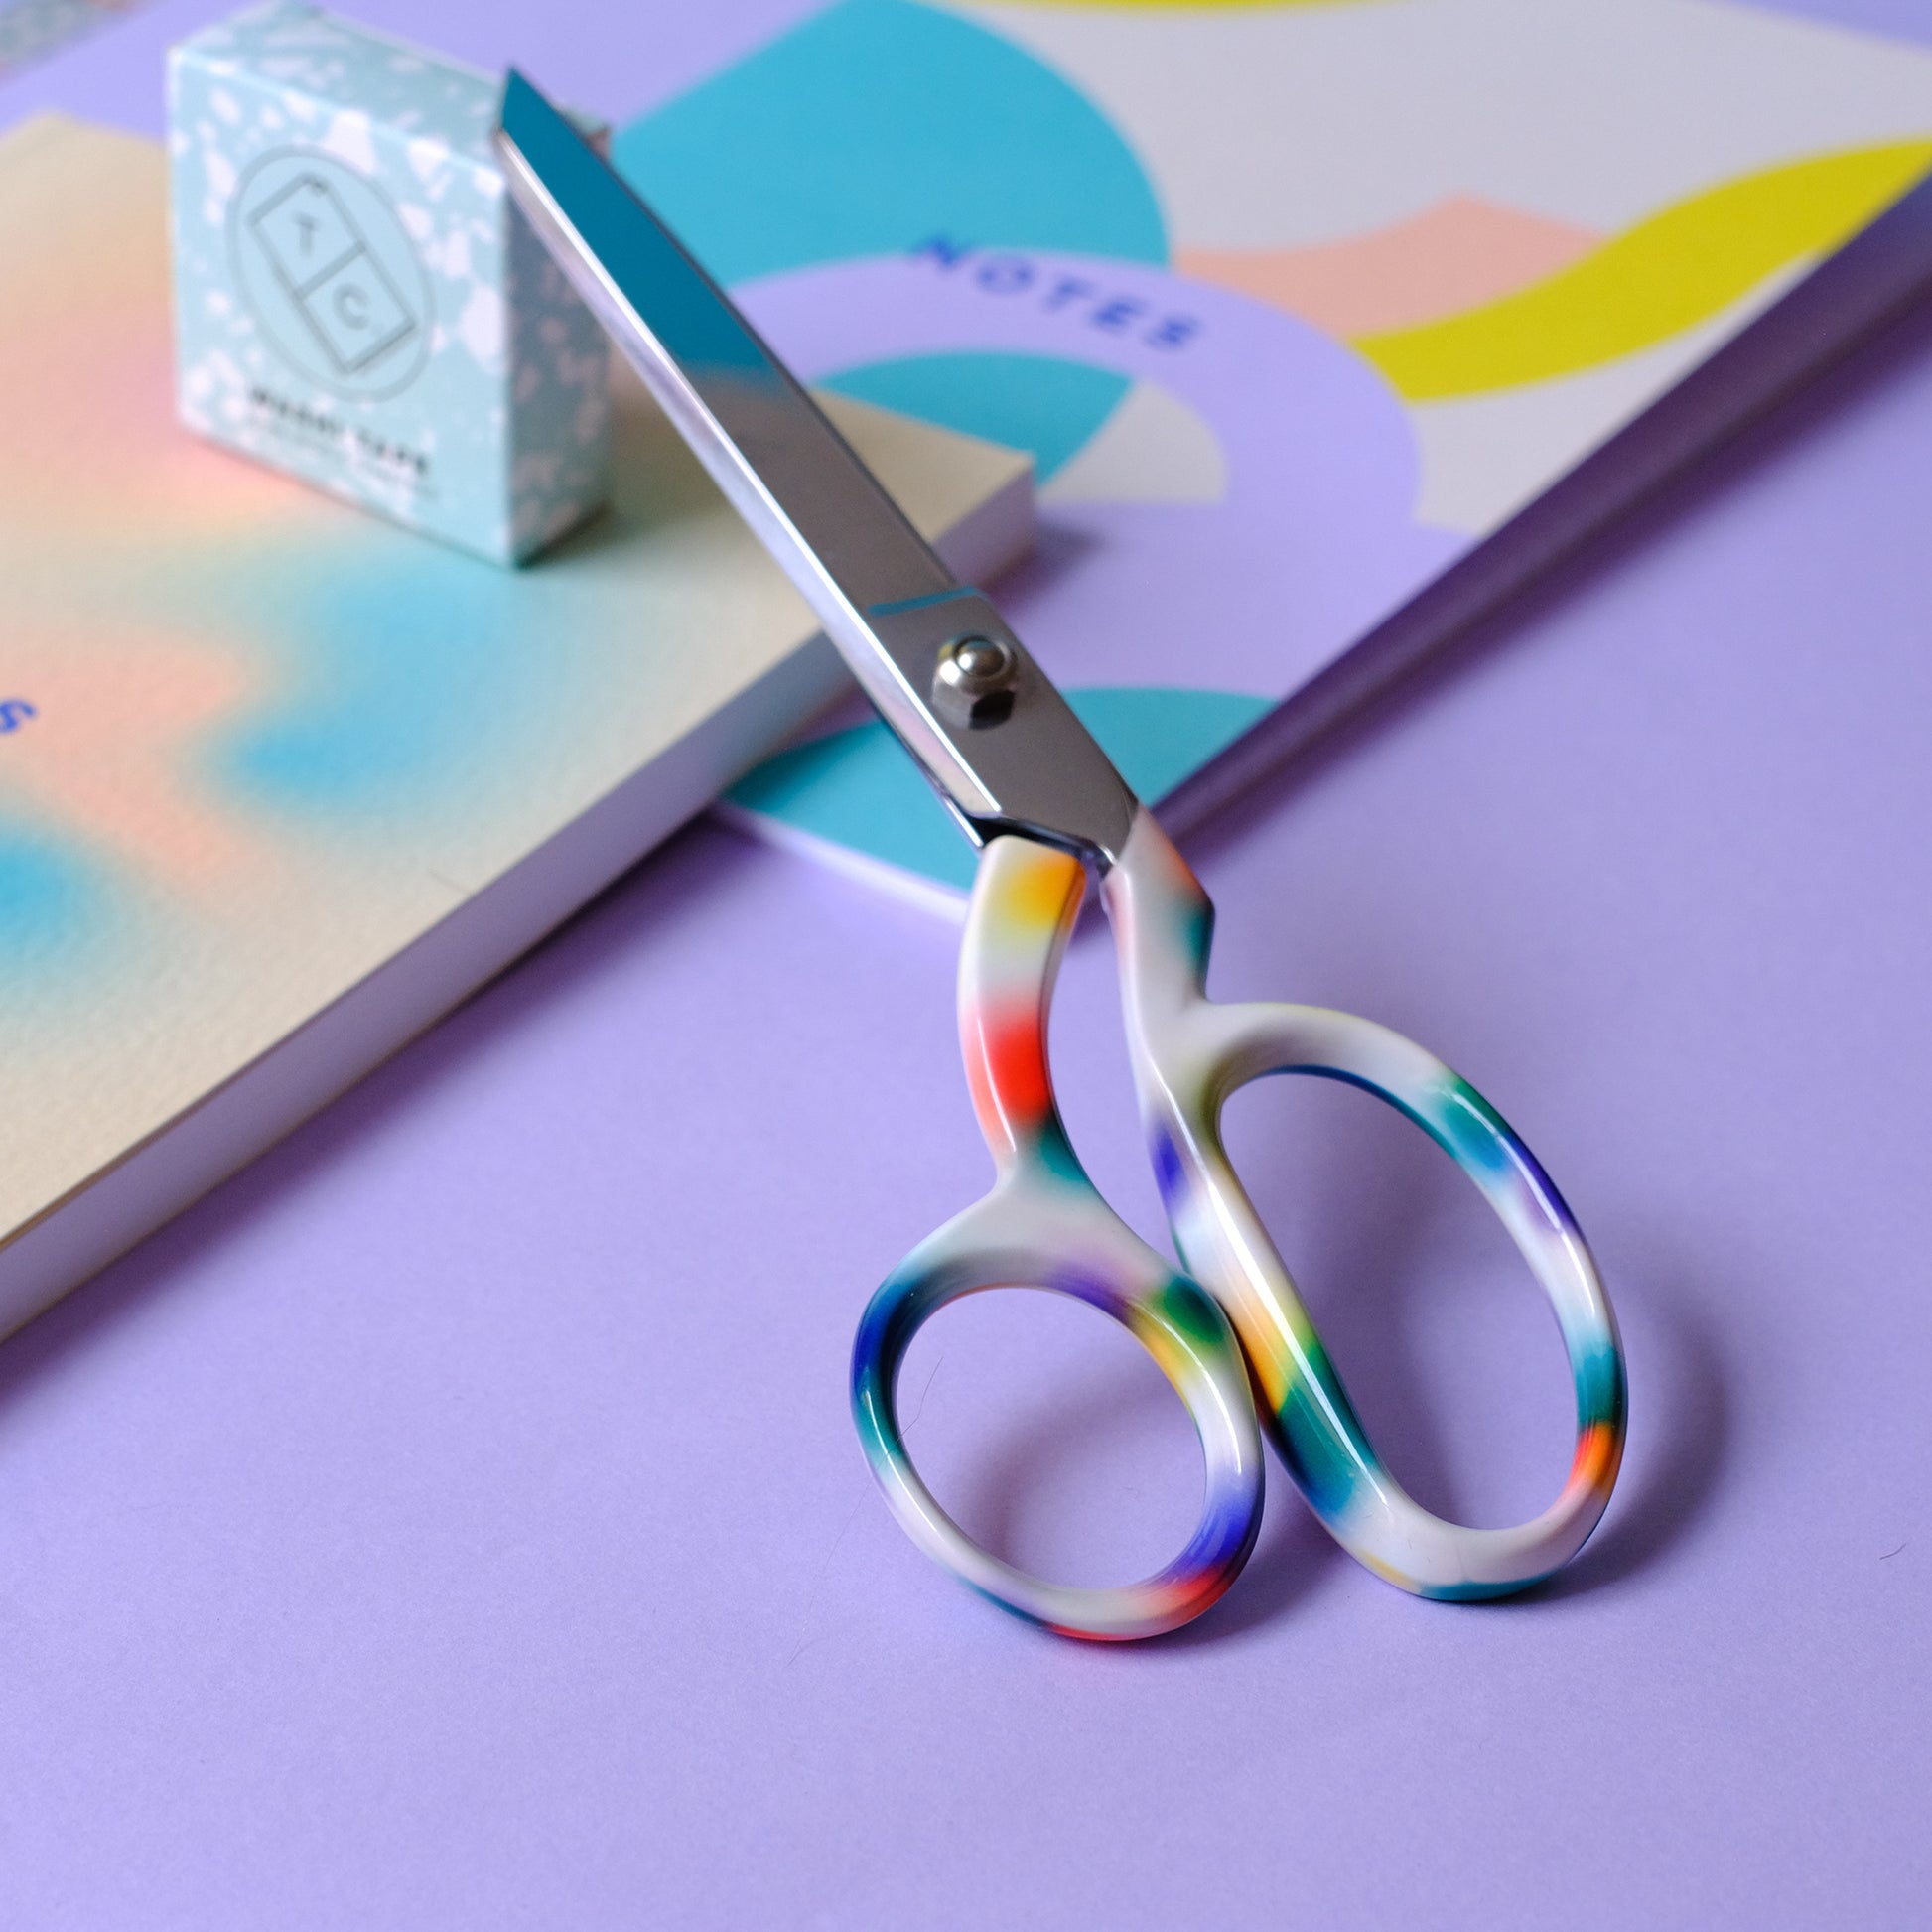 Gradient Print Paper Scissors